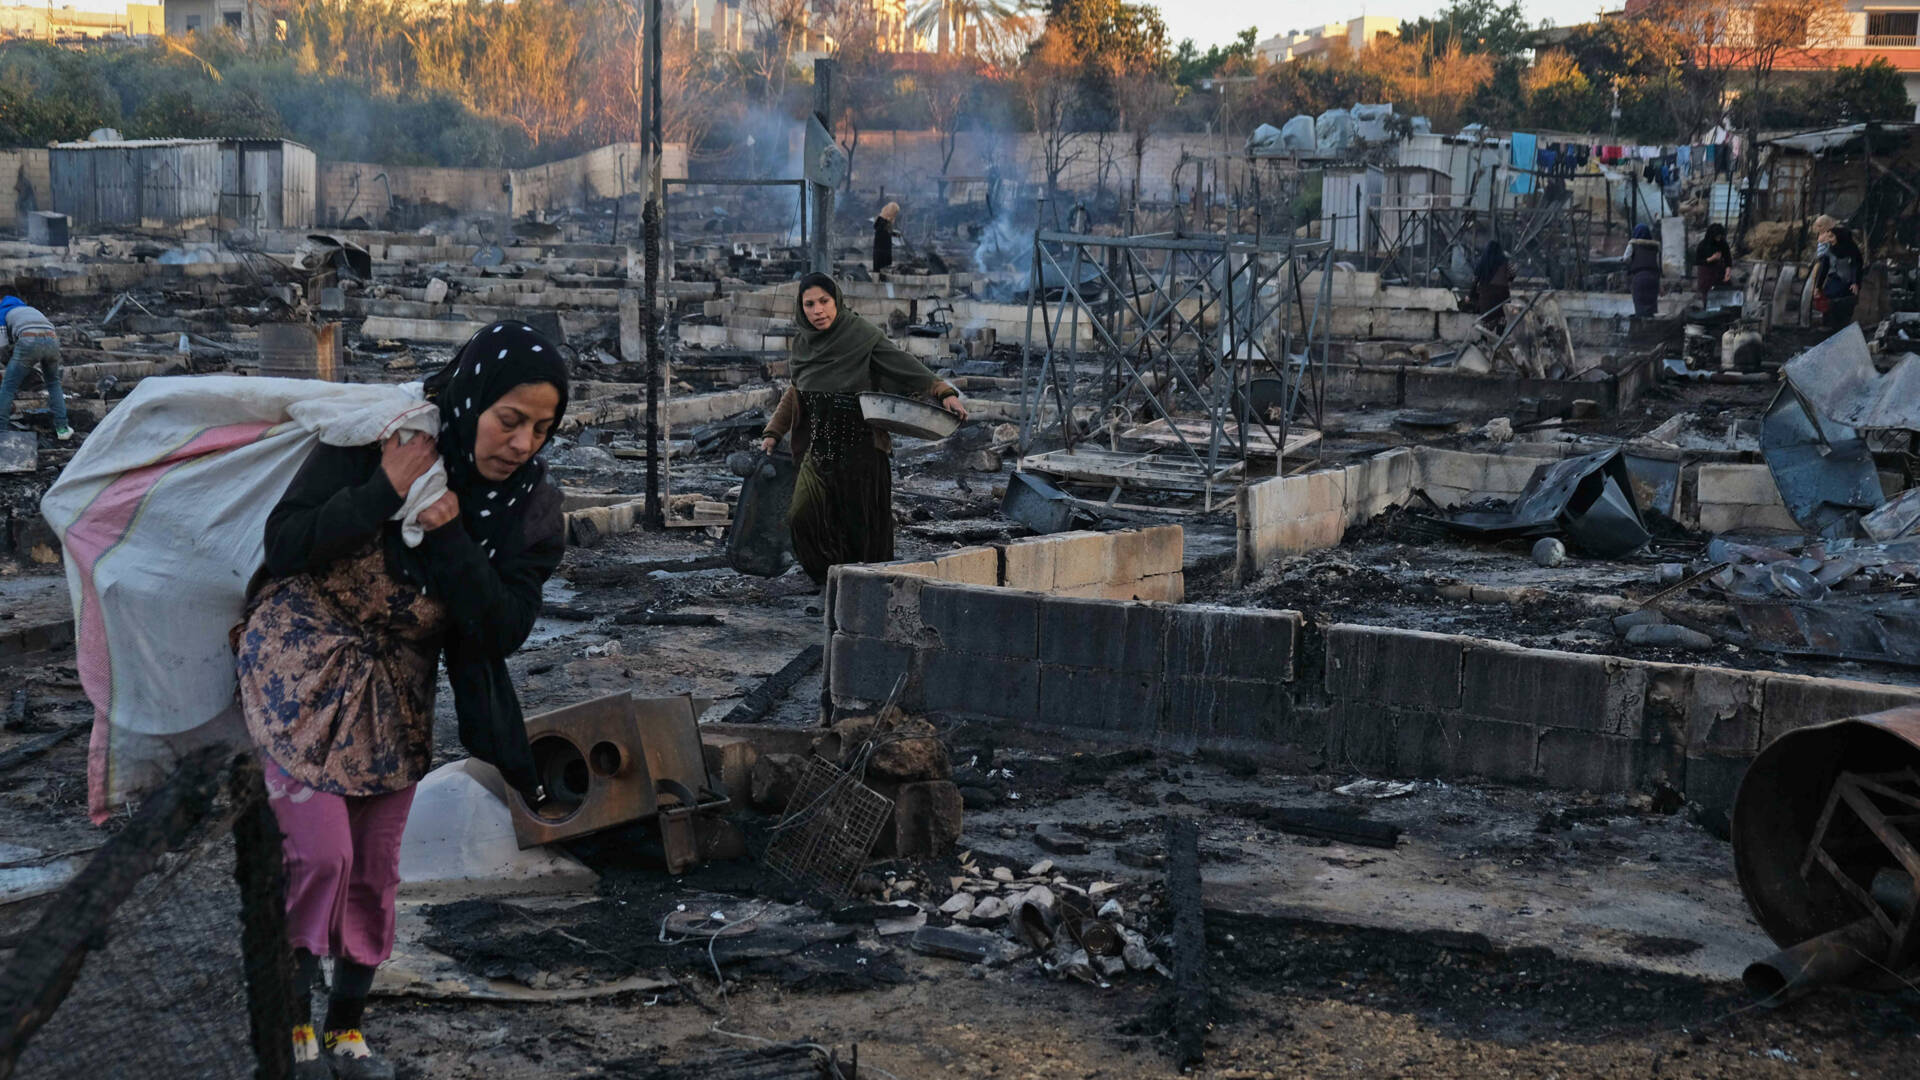 مئات السوريين بلا مأوى بعد حريق في مخيم اللاجئين...ما هو رد الحكومة اللبنانية؟